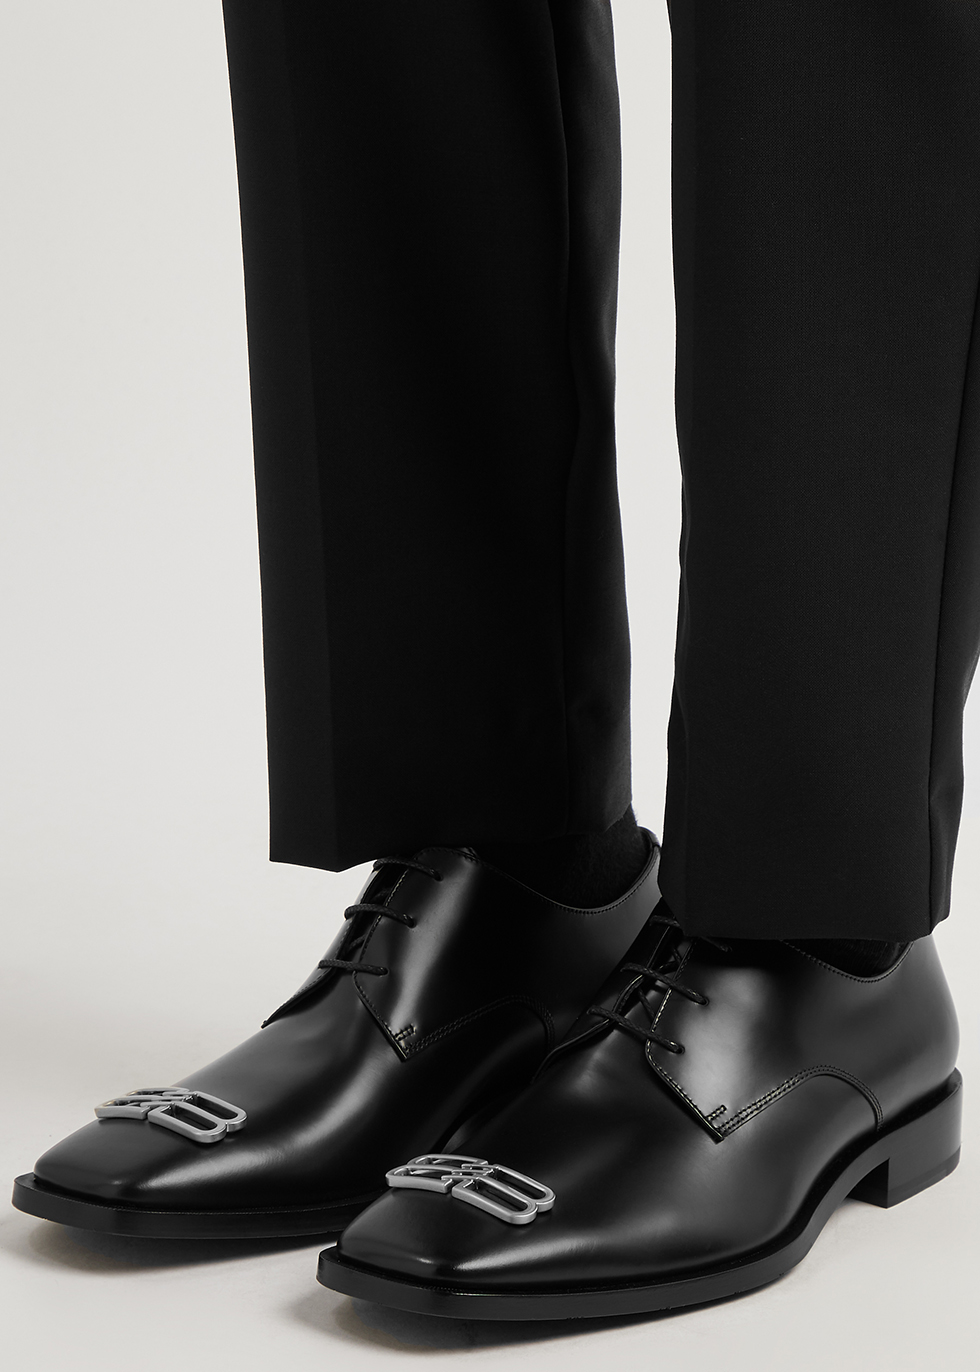 Balenciaga  Shoes  Balenciaga Black Oxford Shoes With Silver Hardware   Poshmark